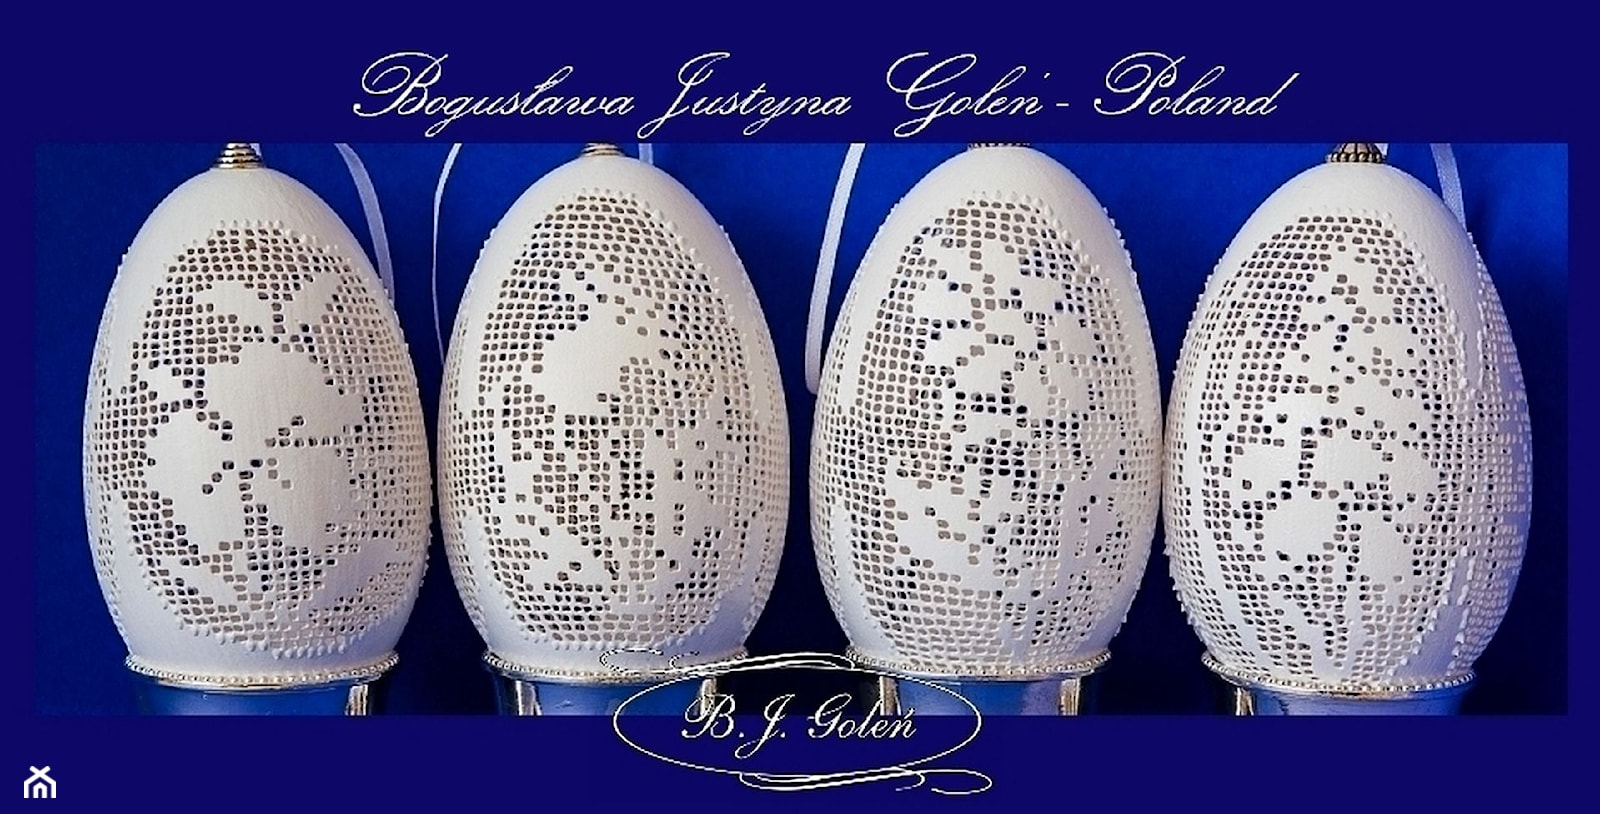 Ażurowe pisanki inspirowane motywami koronkami haftu filet - krzyżykowymi - zdjęcie od Ażurowe pisanki rzeźbione - Egg art - Homebook